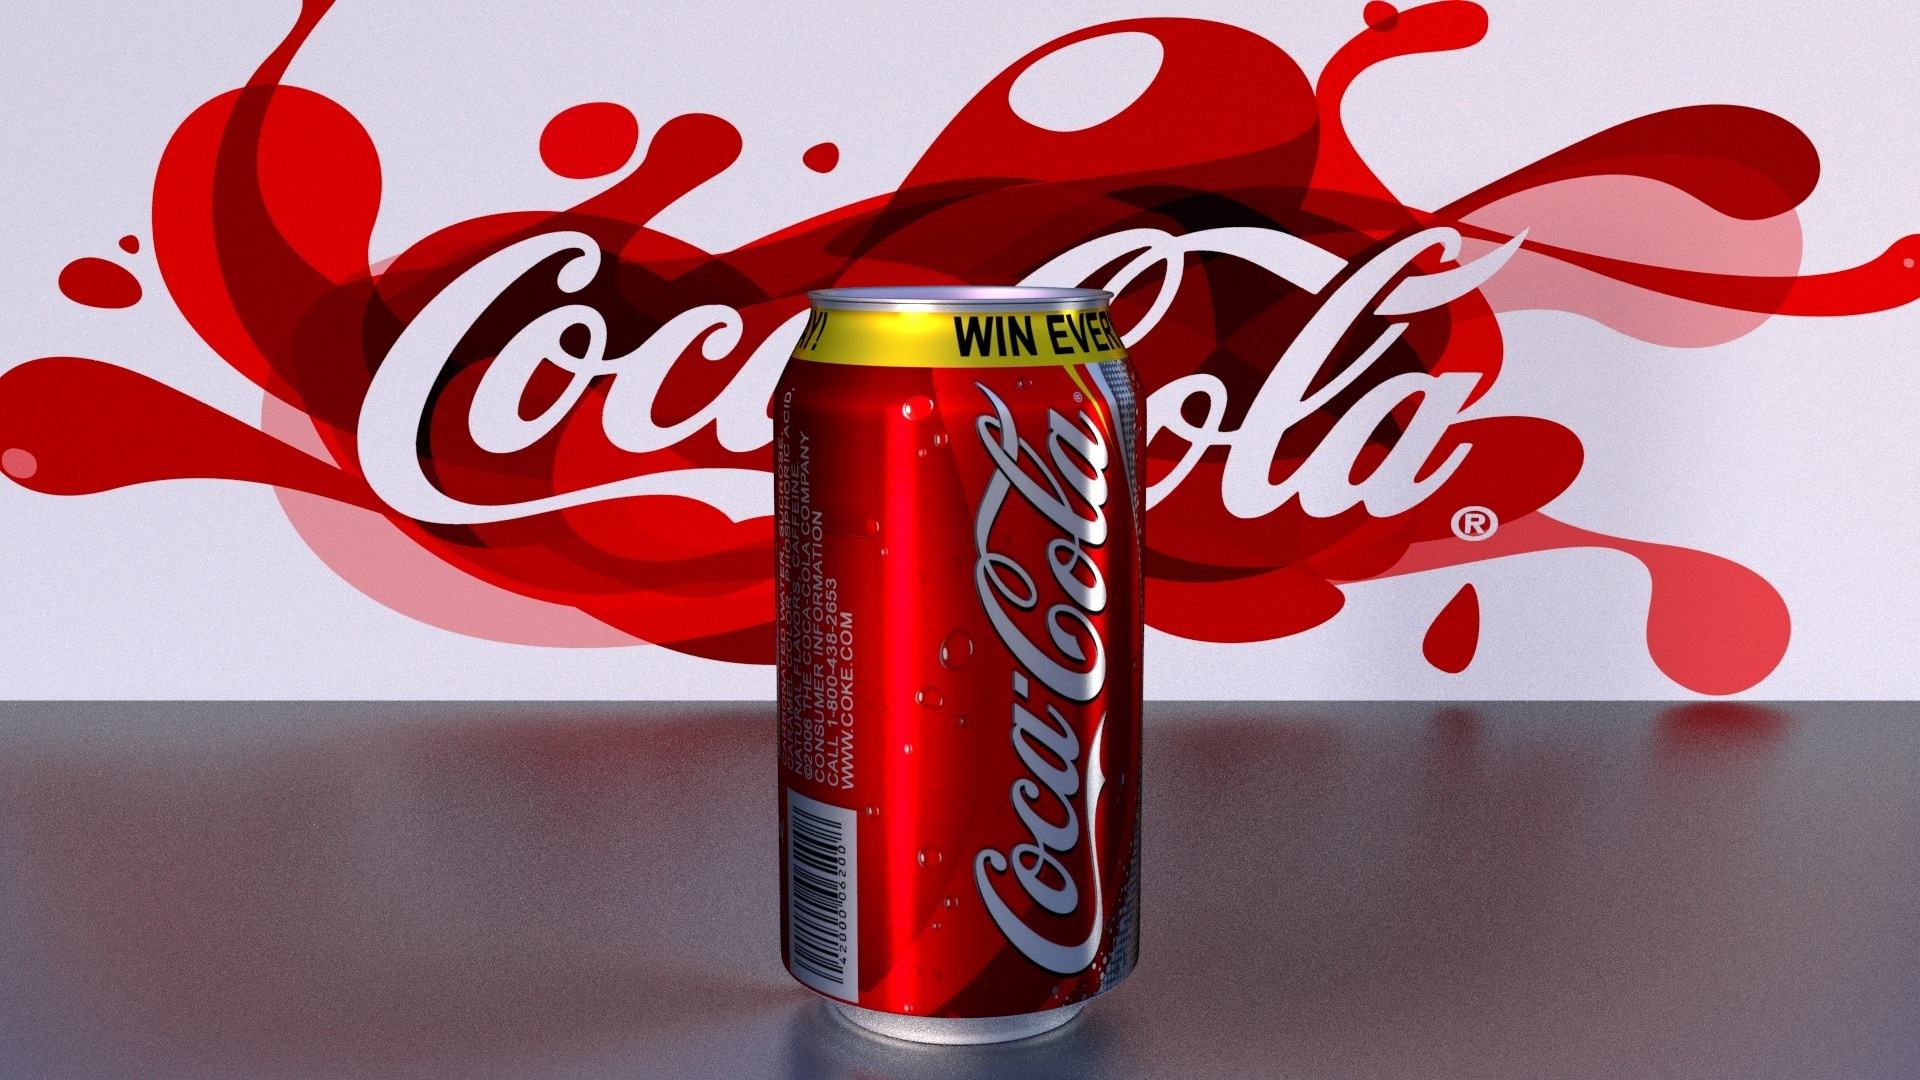 「中企品牌网」从广告语看可口可乐品牌定位百年变迁